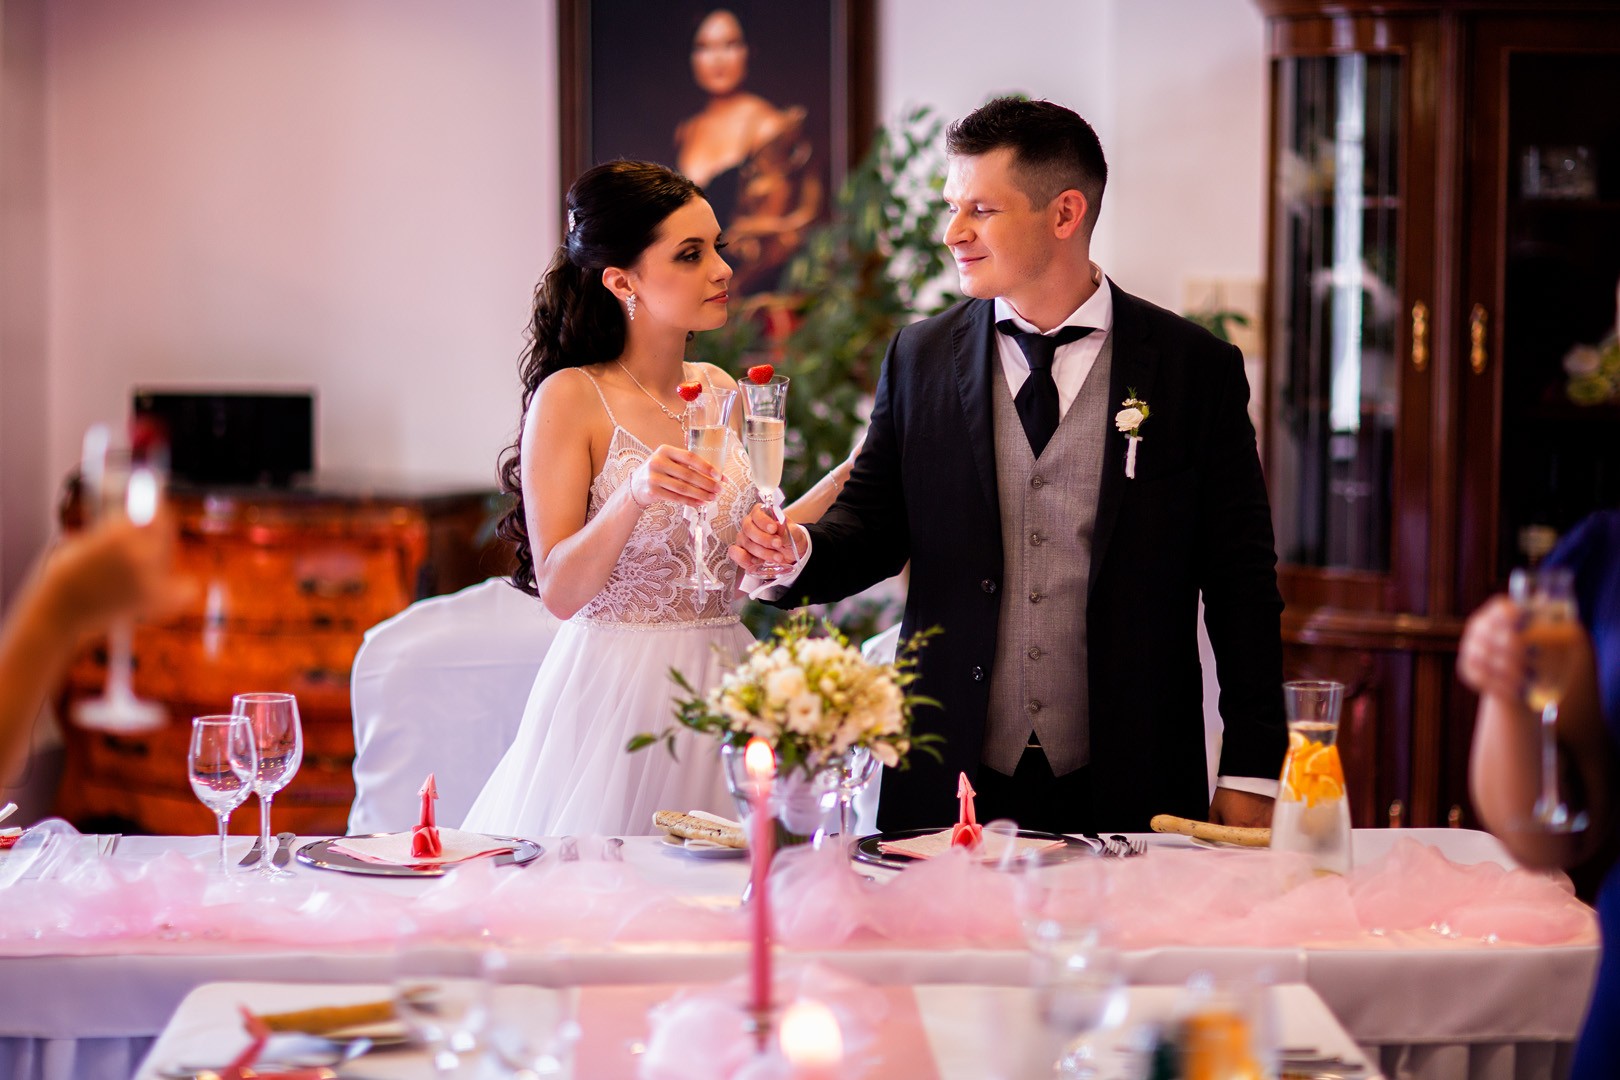 Picturesque dream wedding of Kloudy & Michal in Hluboká nad Vltavou. - 0282.jpg